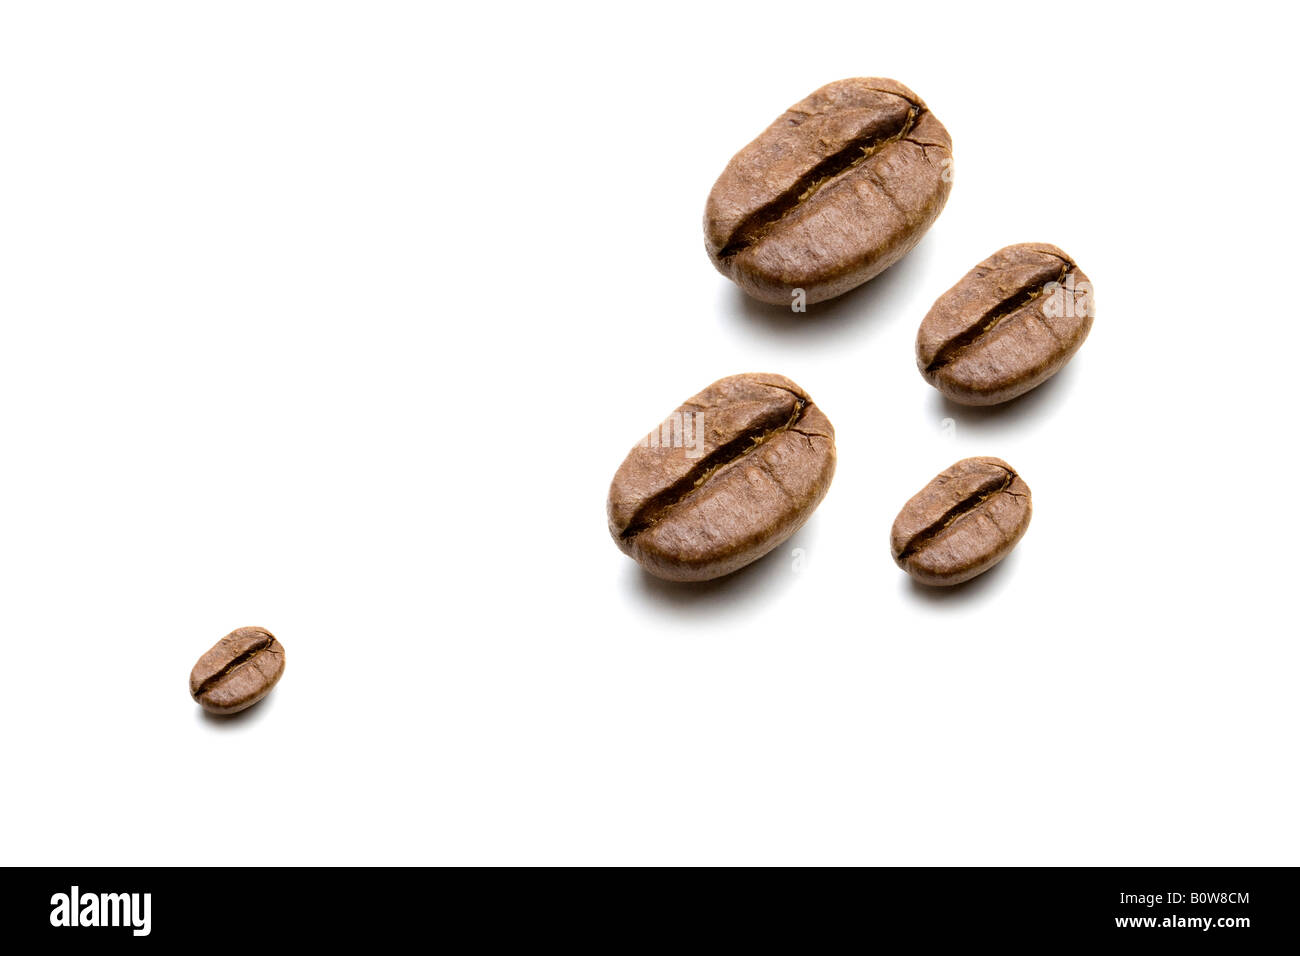 Coffee beans, various sizes Stock Photo